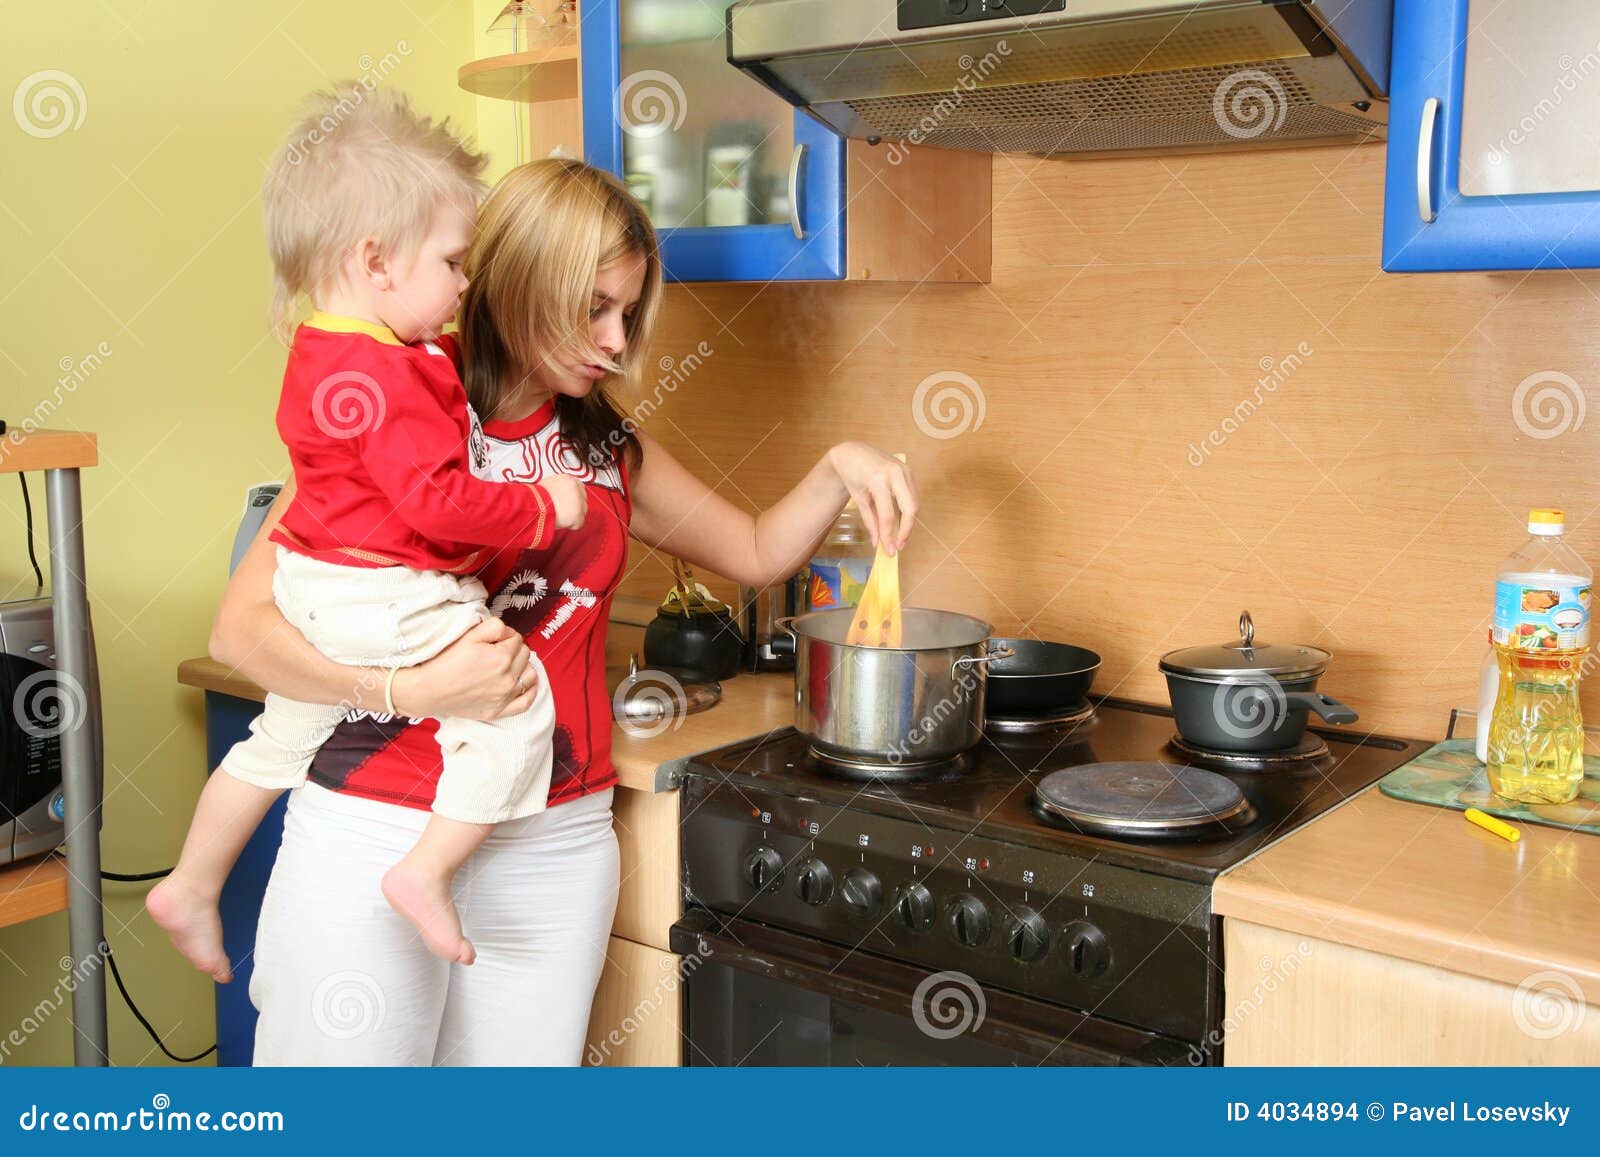 Сообщение на кухне мама. Кухня для детей. Мама с ребенком на кухне. Фотосессия мама и дети на кухне. Женщина с ребенком на кухне.